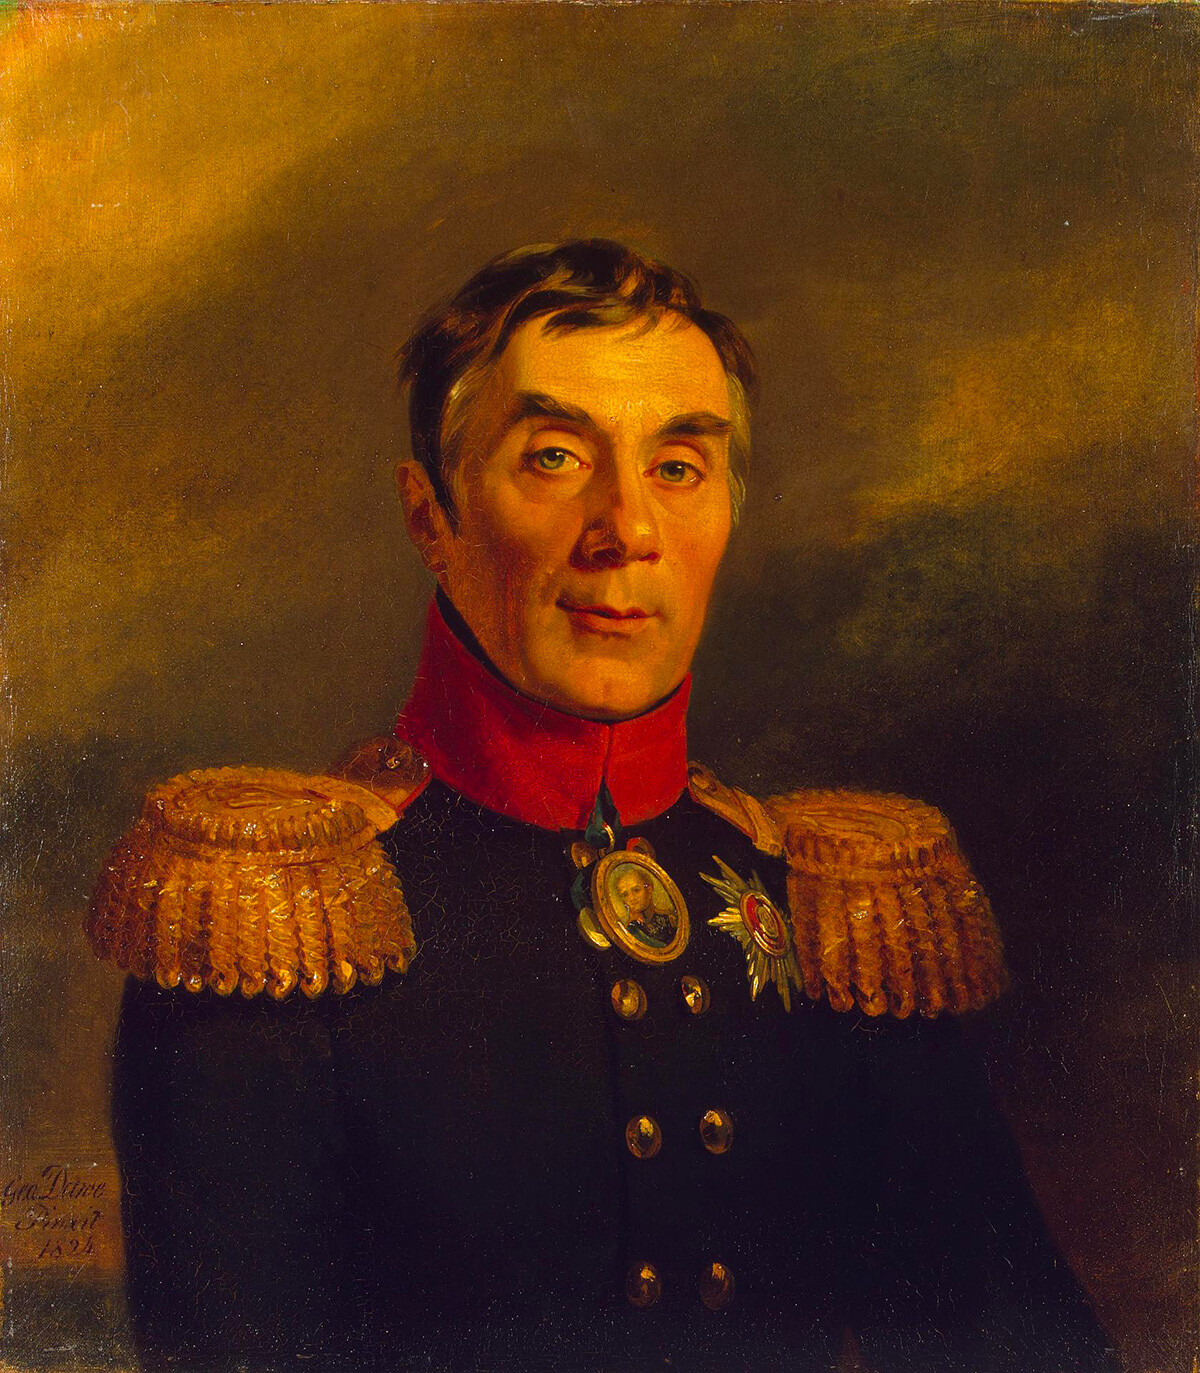 Aleksej Arakcheev ritratto da George Dawe, 1824. Arakcheev fu governatore di San Pietroburgo sotto lo zar Paolo I, e nel 1808 divenne ministro della guerra sotto il nuovo zar Alessandro I. Era noto per la sua durezza e inflessibilità